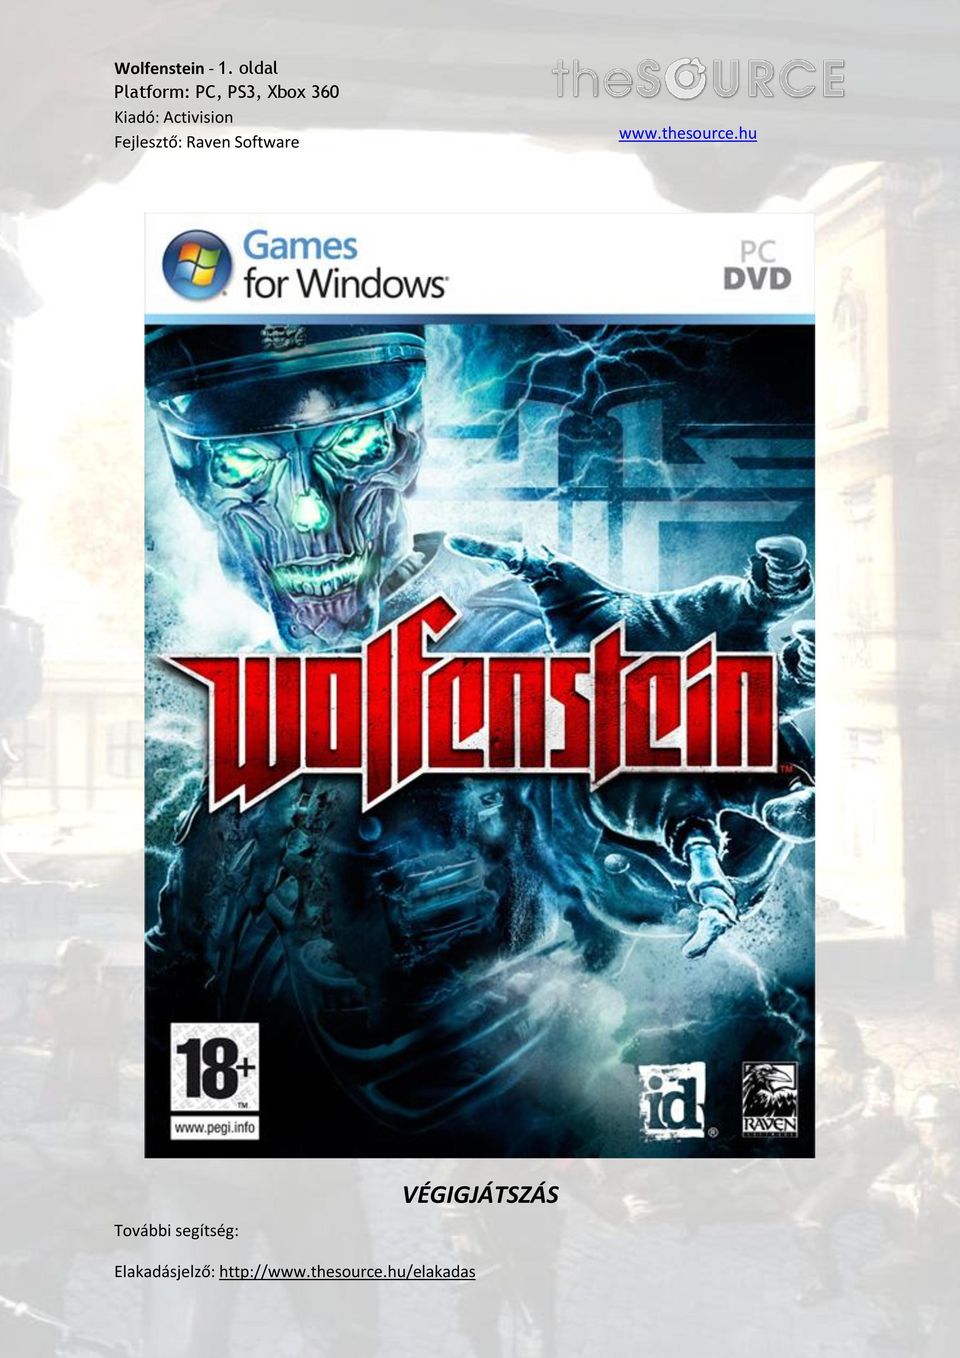 VÉGIGJÁTSZÁS. Wolfenstein - 1. oldal Platform: PC, PS3, Xbox 360 Kiadó:  Activision Fejlesztő: Raven Software. - PDF Free Download